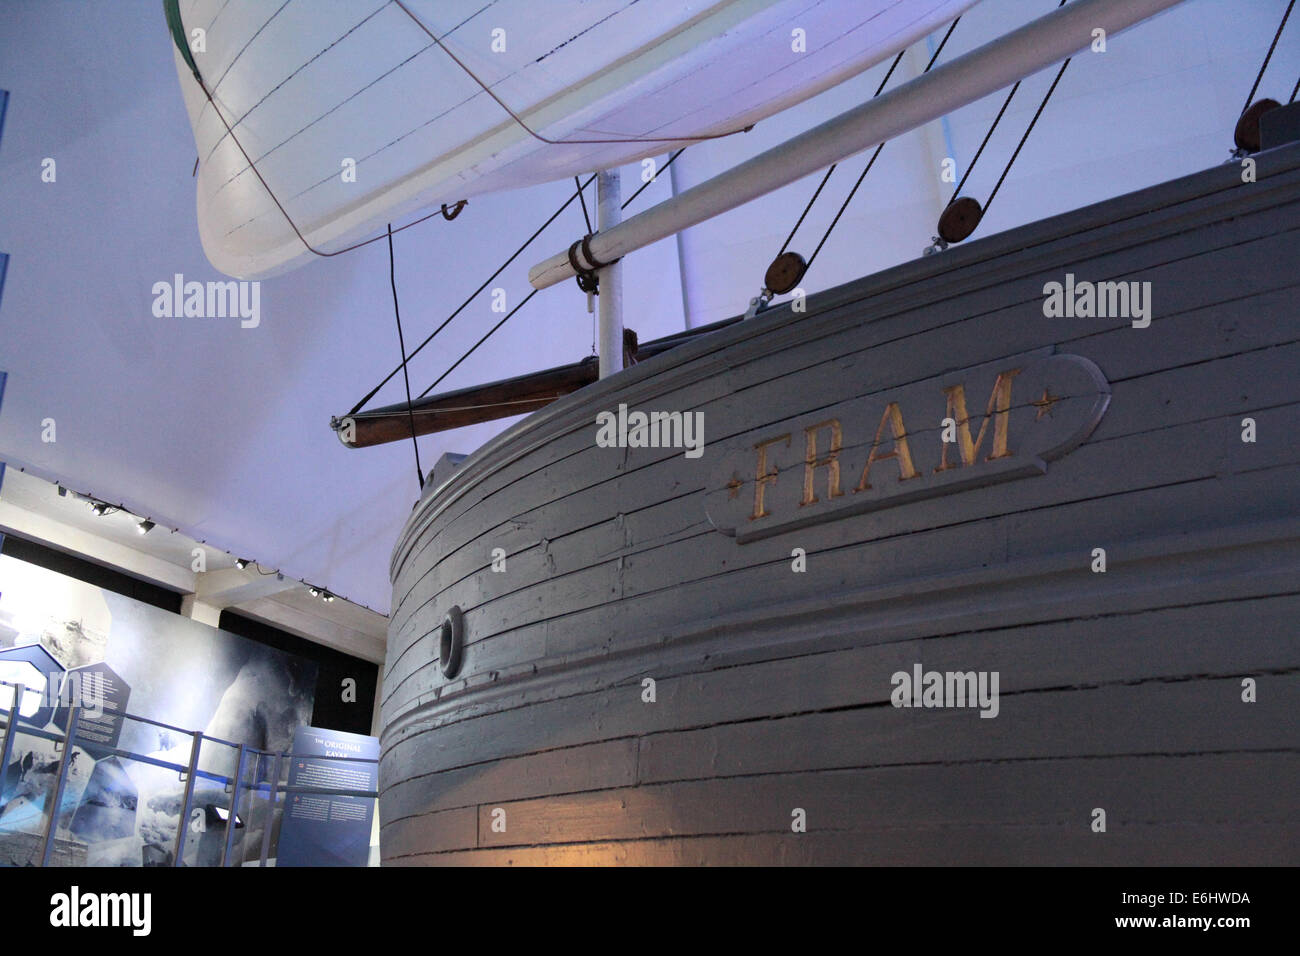 Navire d'expédition polaire FRAM dans le musée norvégien à Oslo Banque D'Images